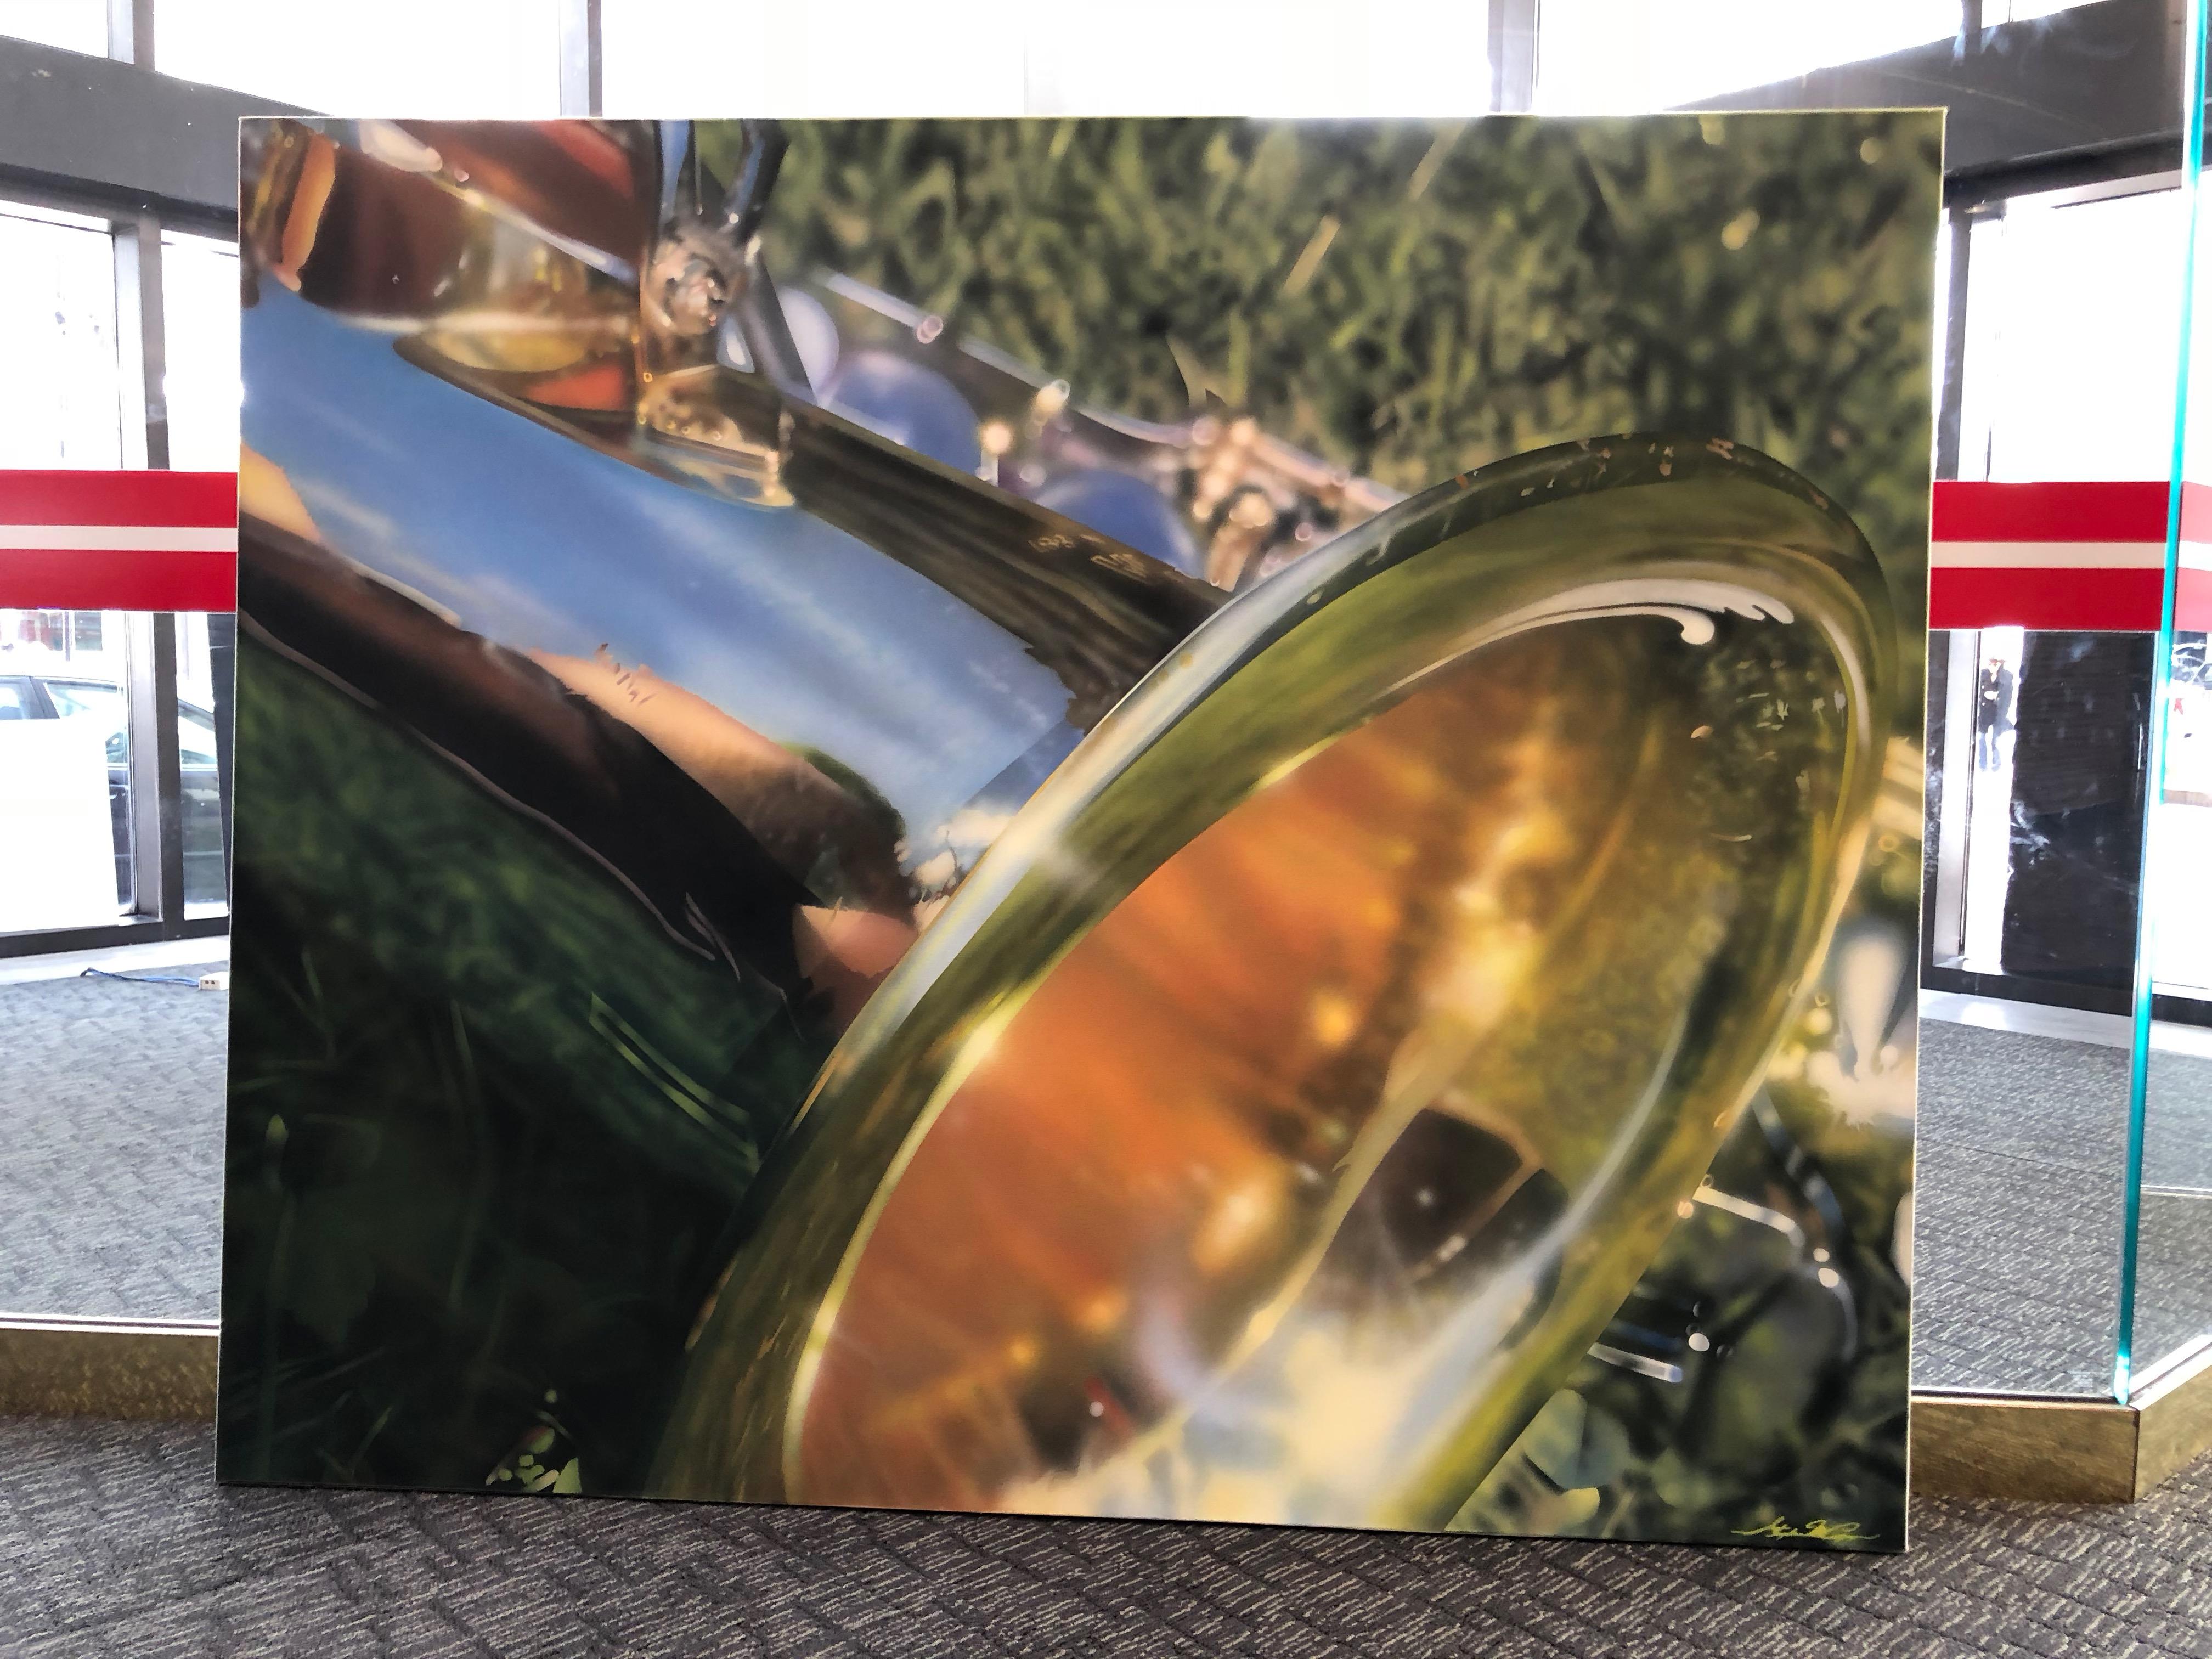 <p>Kommentare des Künstlers<br>Dieses Bild habe ich nach einem Fotoshooting in meinem Garten gemalt. Ich wollte das Saxophon an einem hellen, sonnigen Tag mit einer Grasfläche im Hintergrund und im Vordergrund fotografieren. Anhand des Fotos